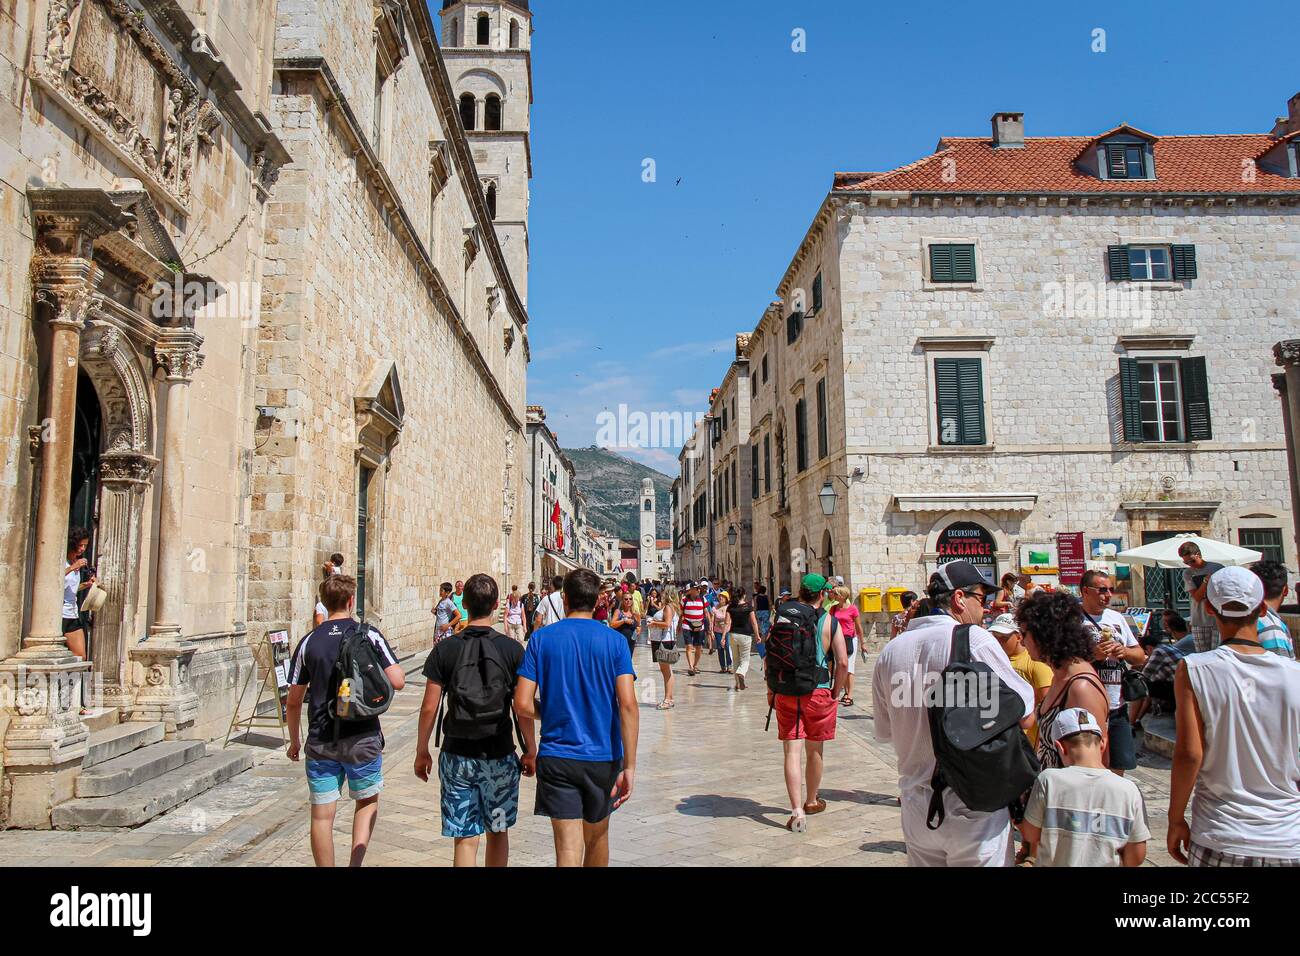 Dubrovnik, Croatie - 15 juillet 2018 : une rue principale très animée de Stradun avec des touristes en été, dans la vieille ville de Dubrovnik, Croatie Banque D'Images